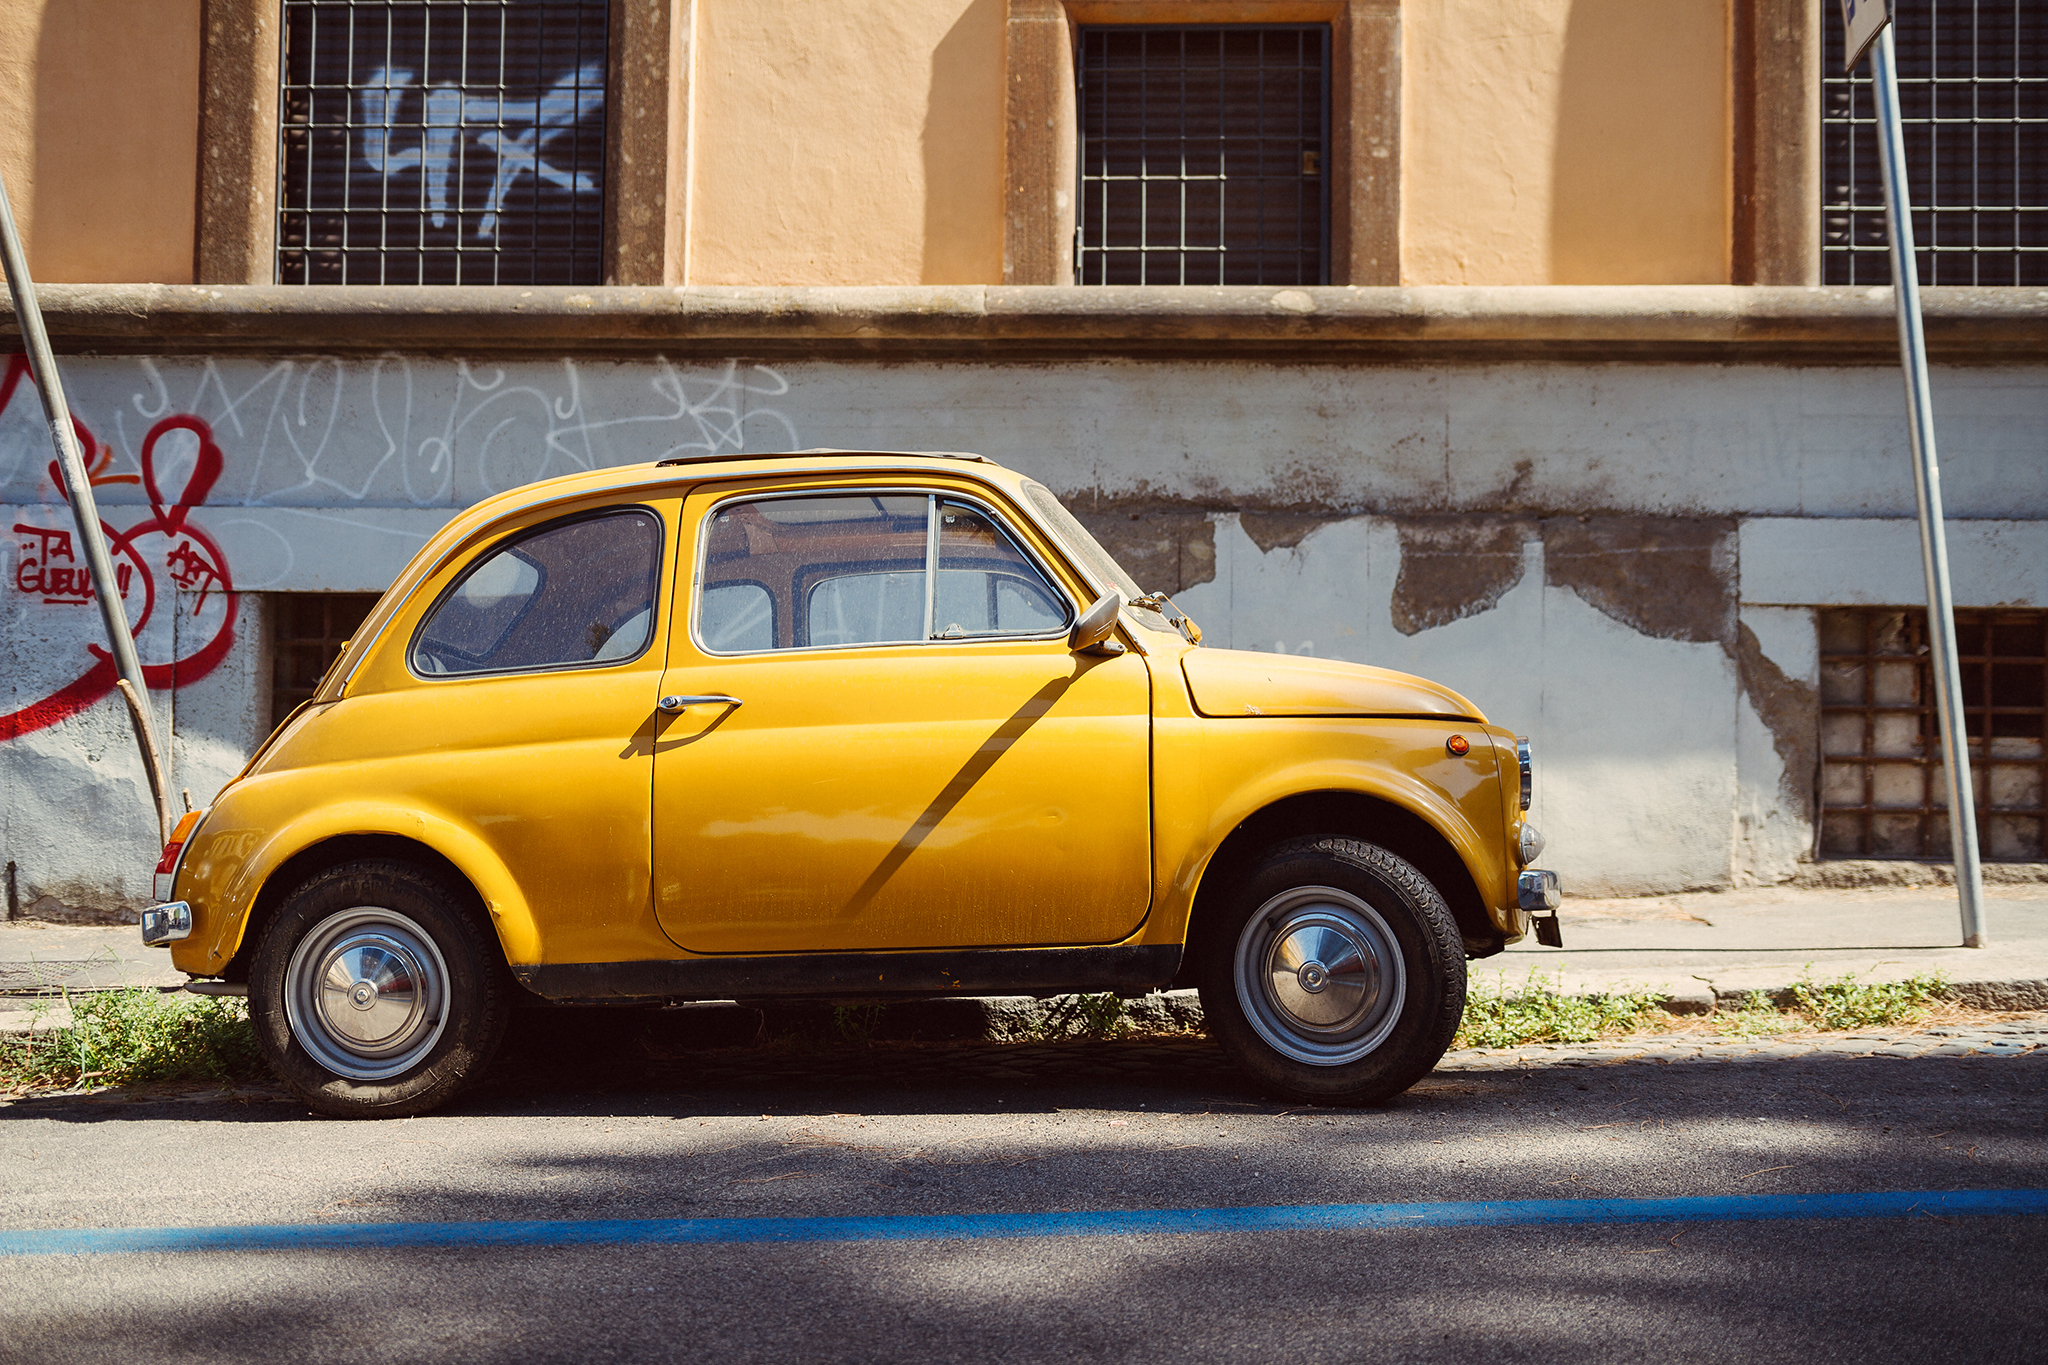 02 Fiat in Rome.jpg